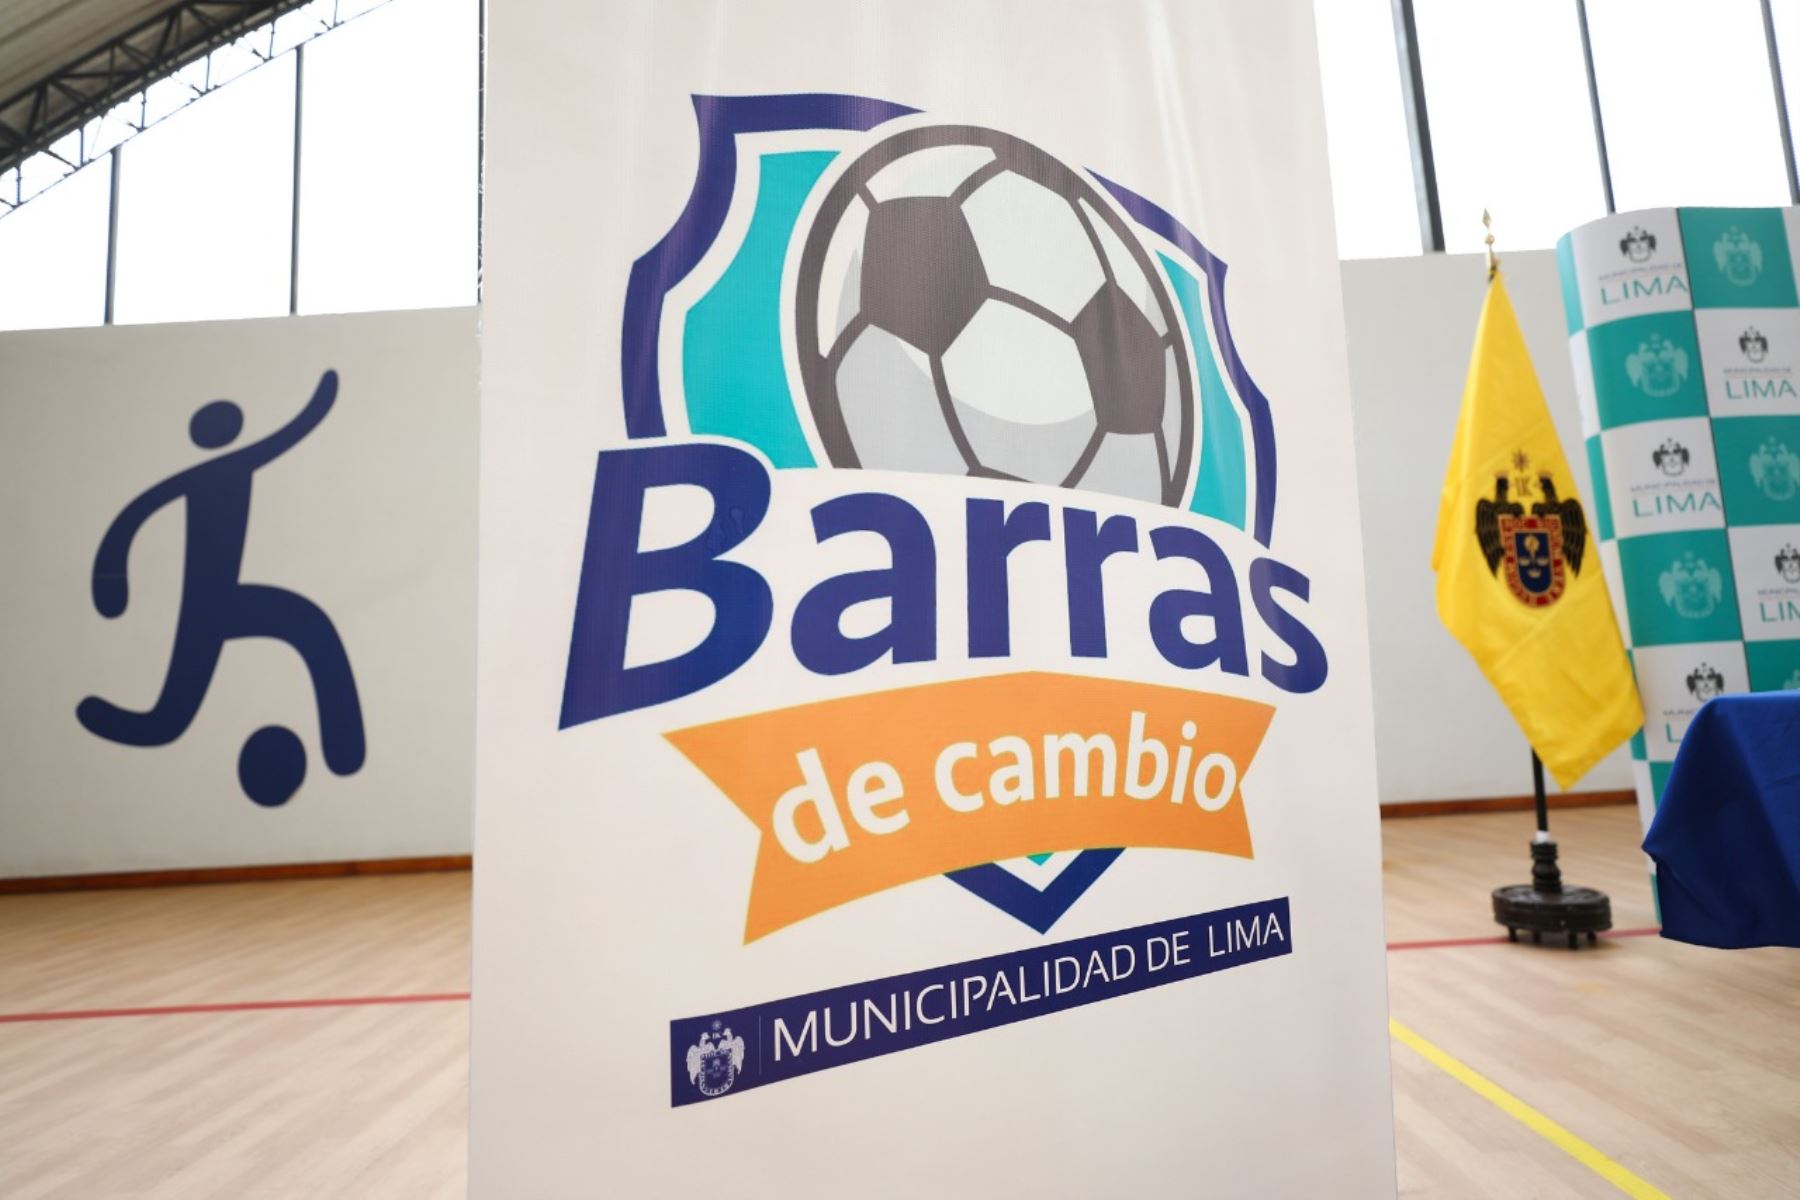 La Municipalidad de Lima lanzó Barras de Cambio, un programa social que busca beneficiar a jóvenes barristas de los diferentes clubes de fútbol de nuestro país, brindándoles oportunidades de desarrollo personal y profesional. Foto: MML